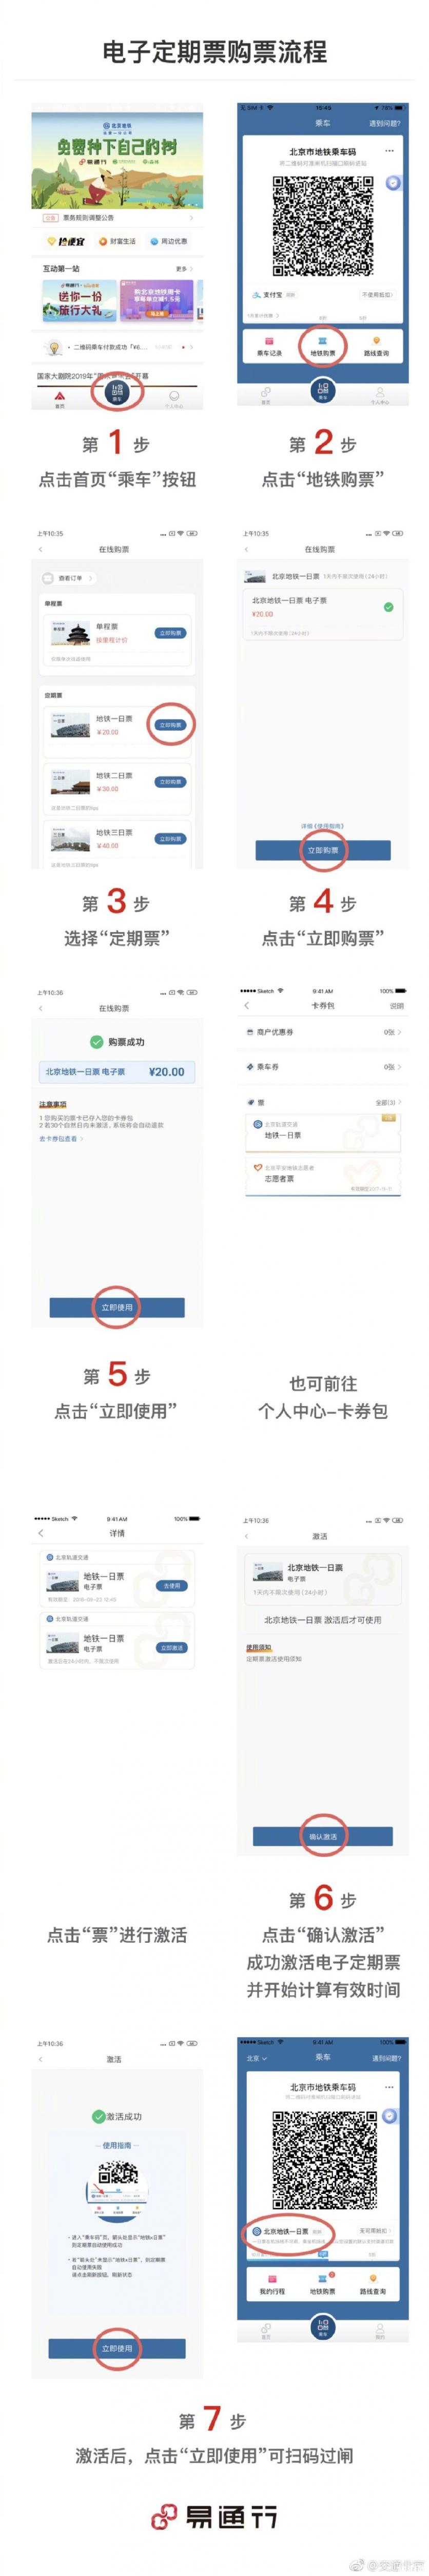 北京地铁电子定期票实施时间+价格+使用